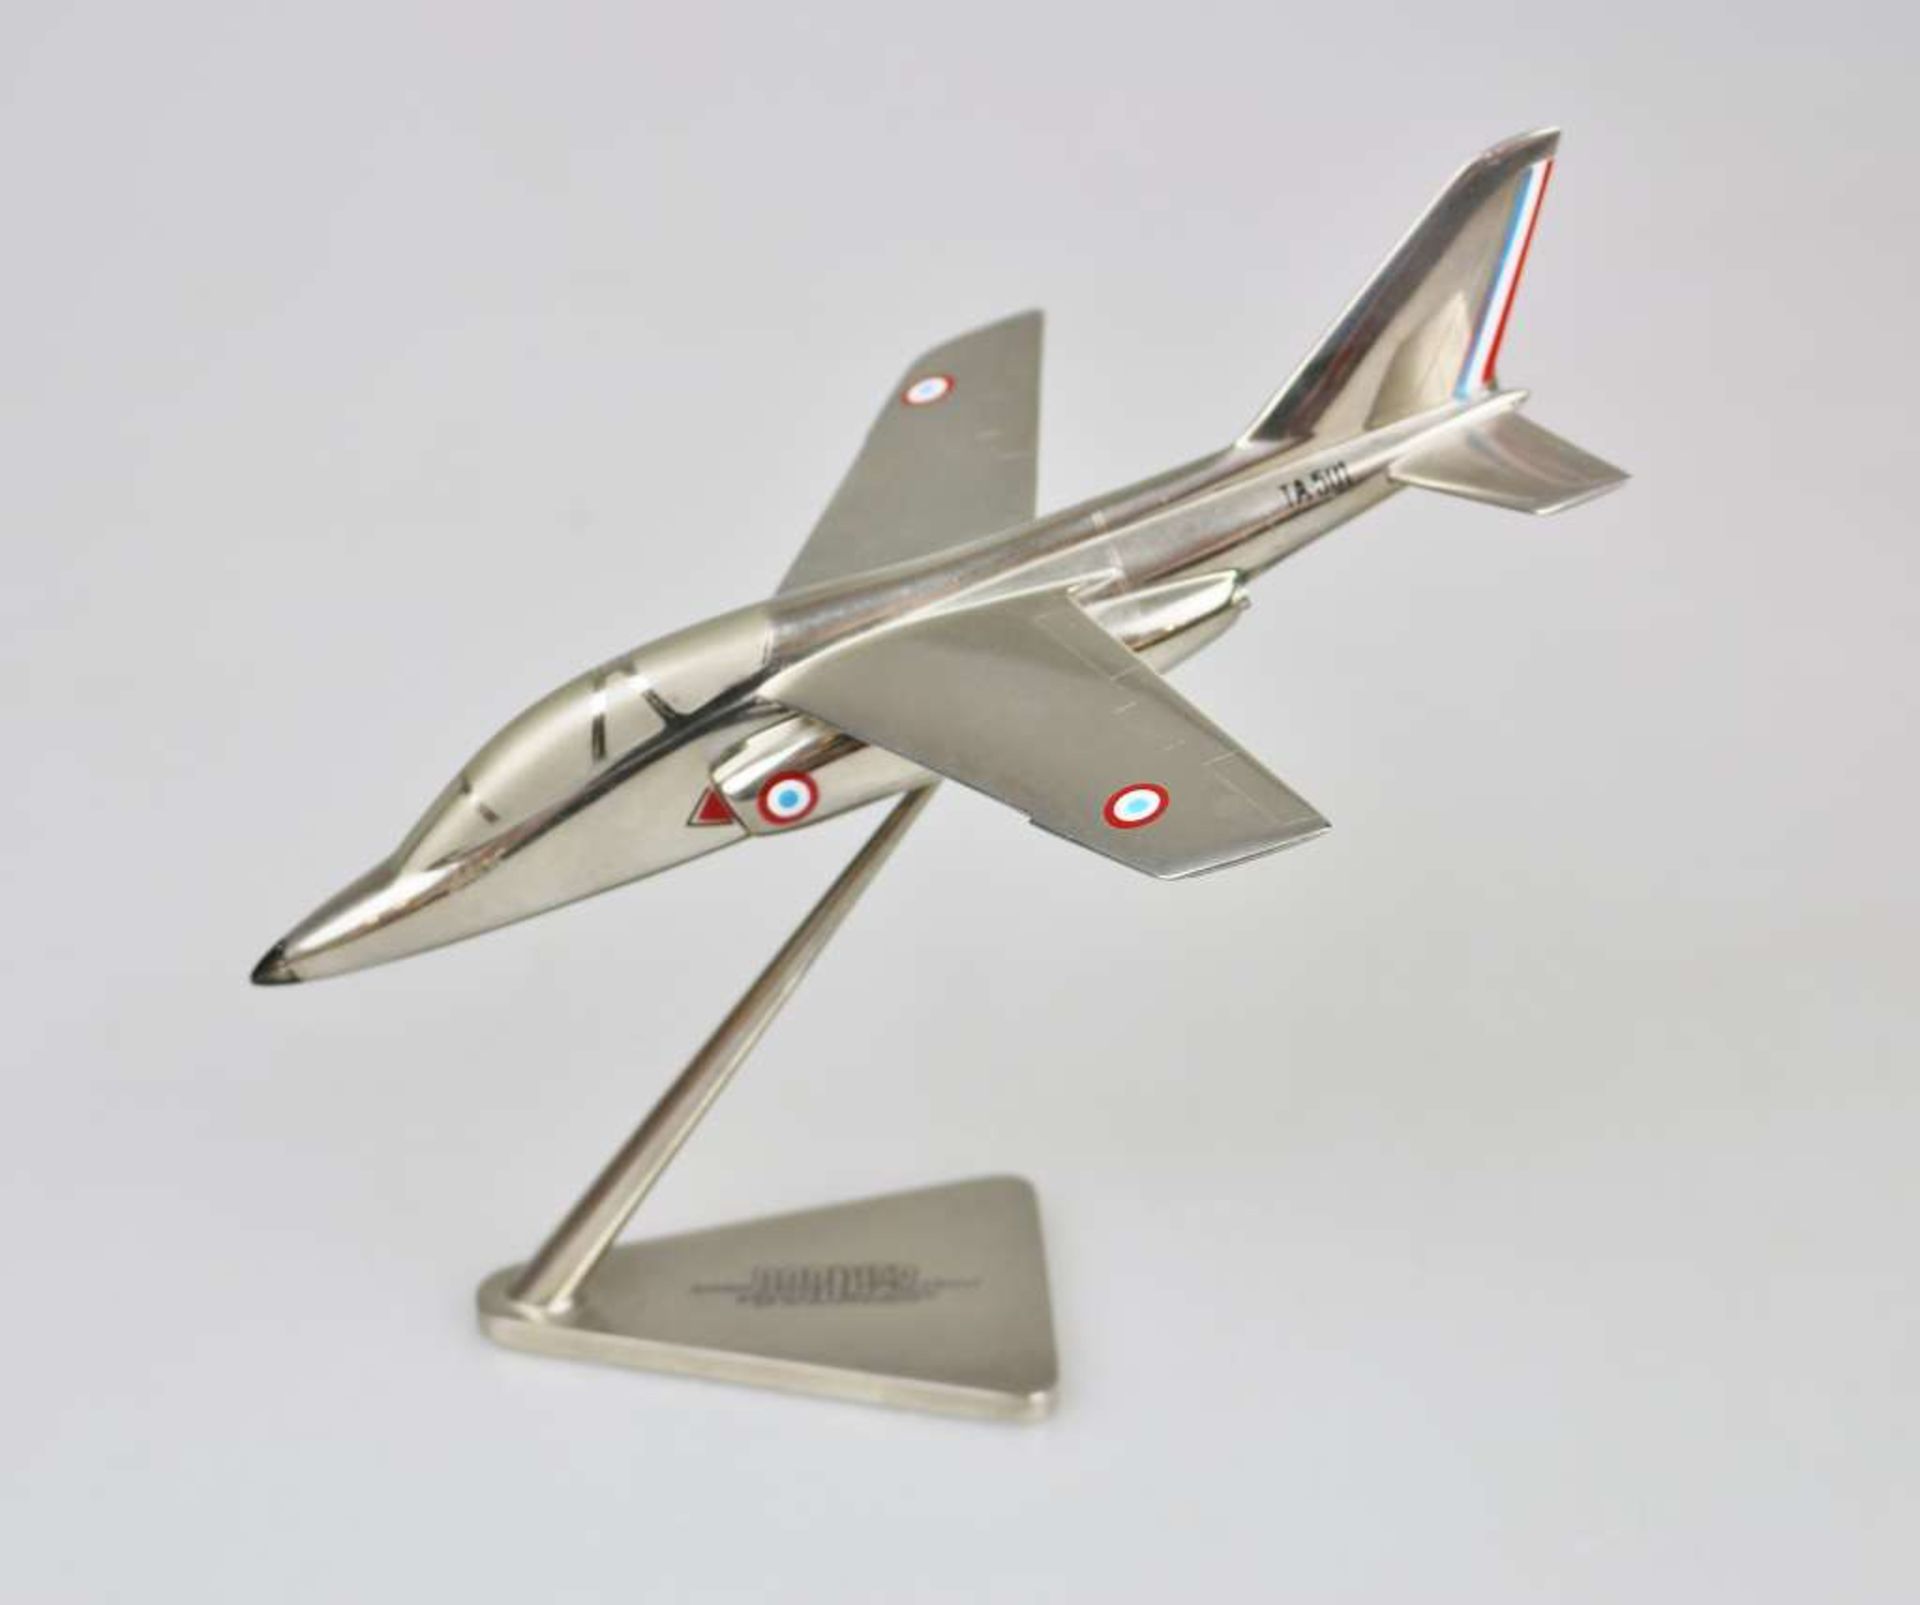 Flugzeugmodell, Alpha Jet, wohl 1960er Jahre, Metall, mit Display-Stand, am Stand bez. "Dornier